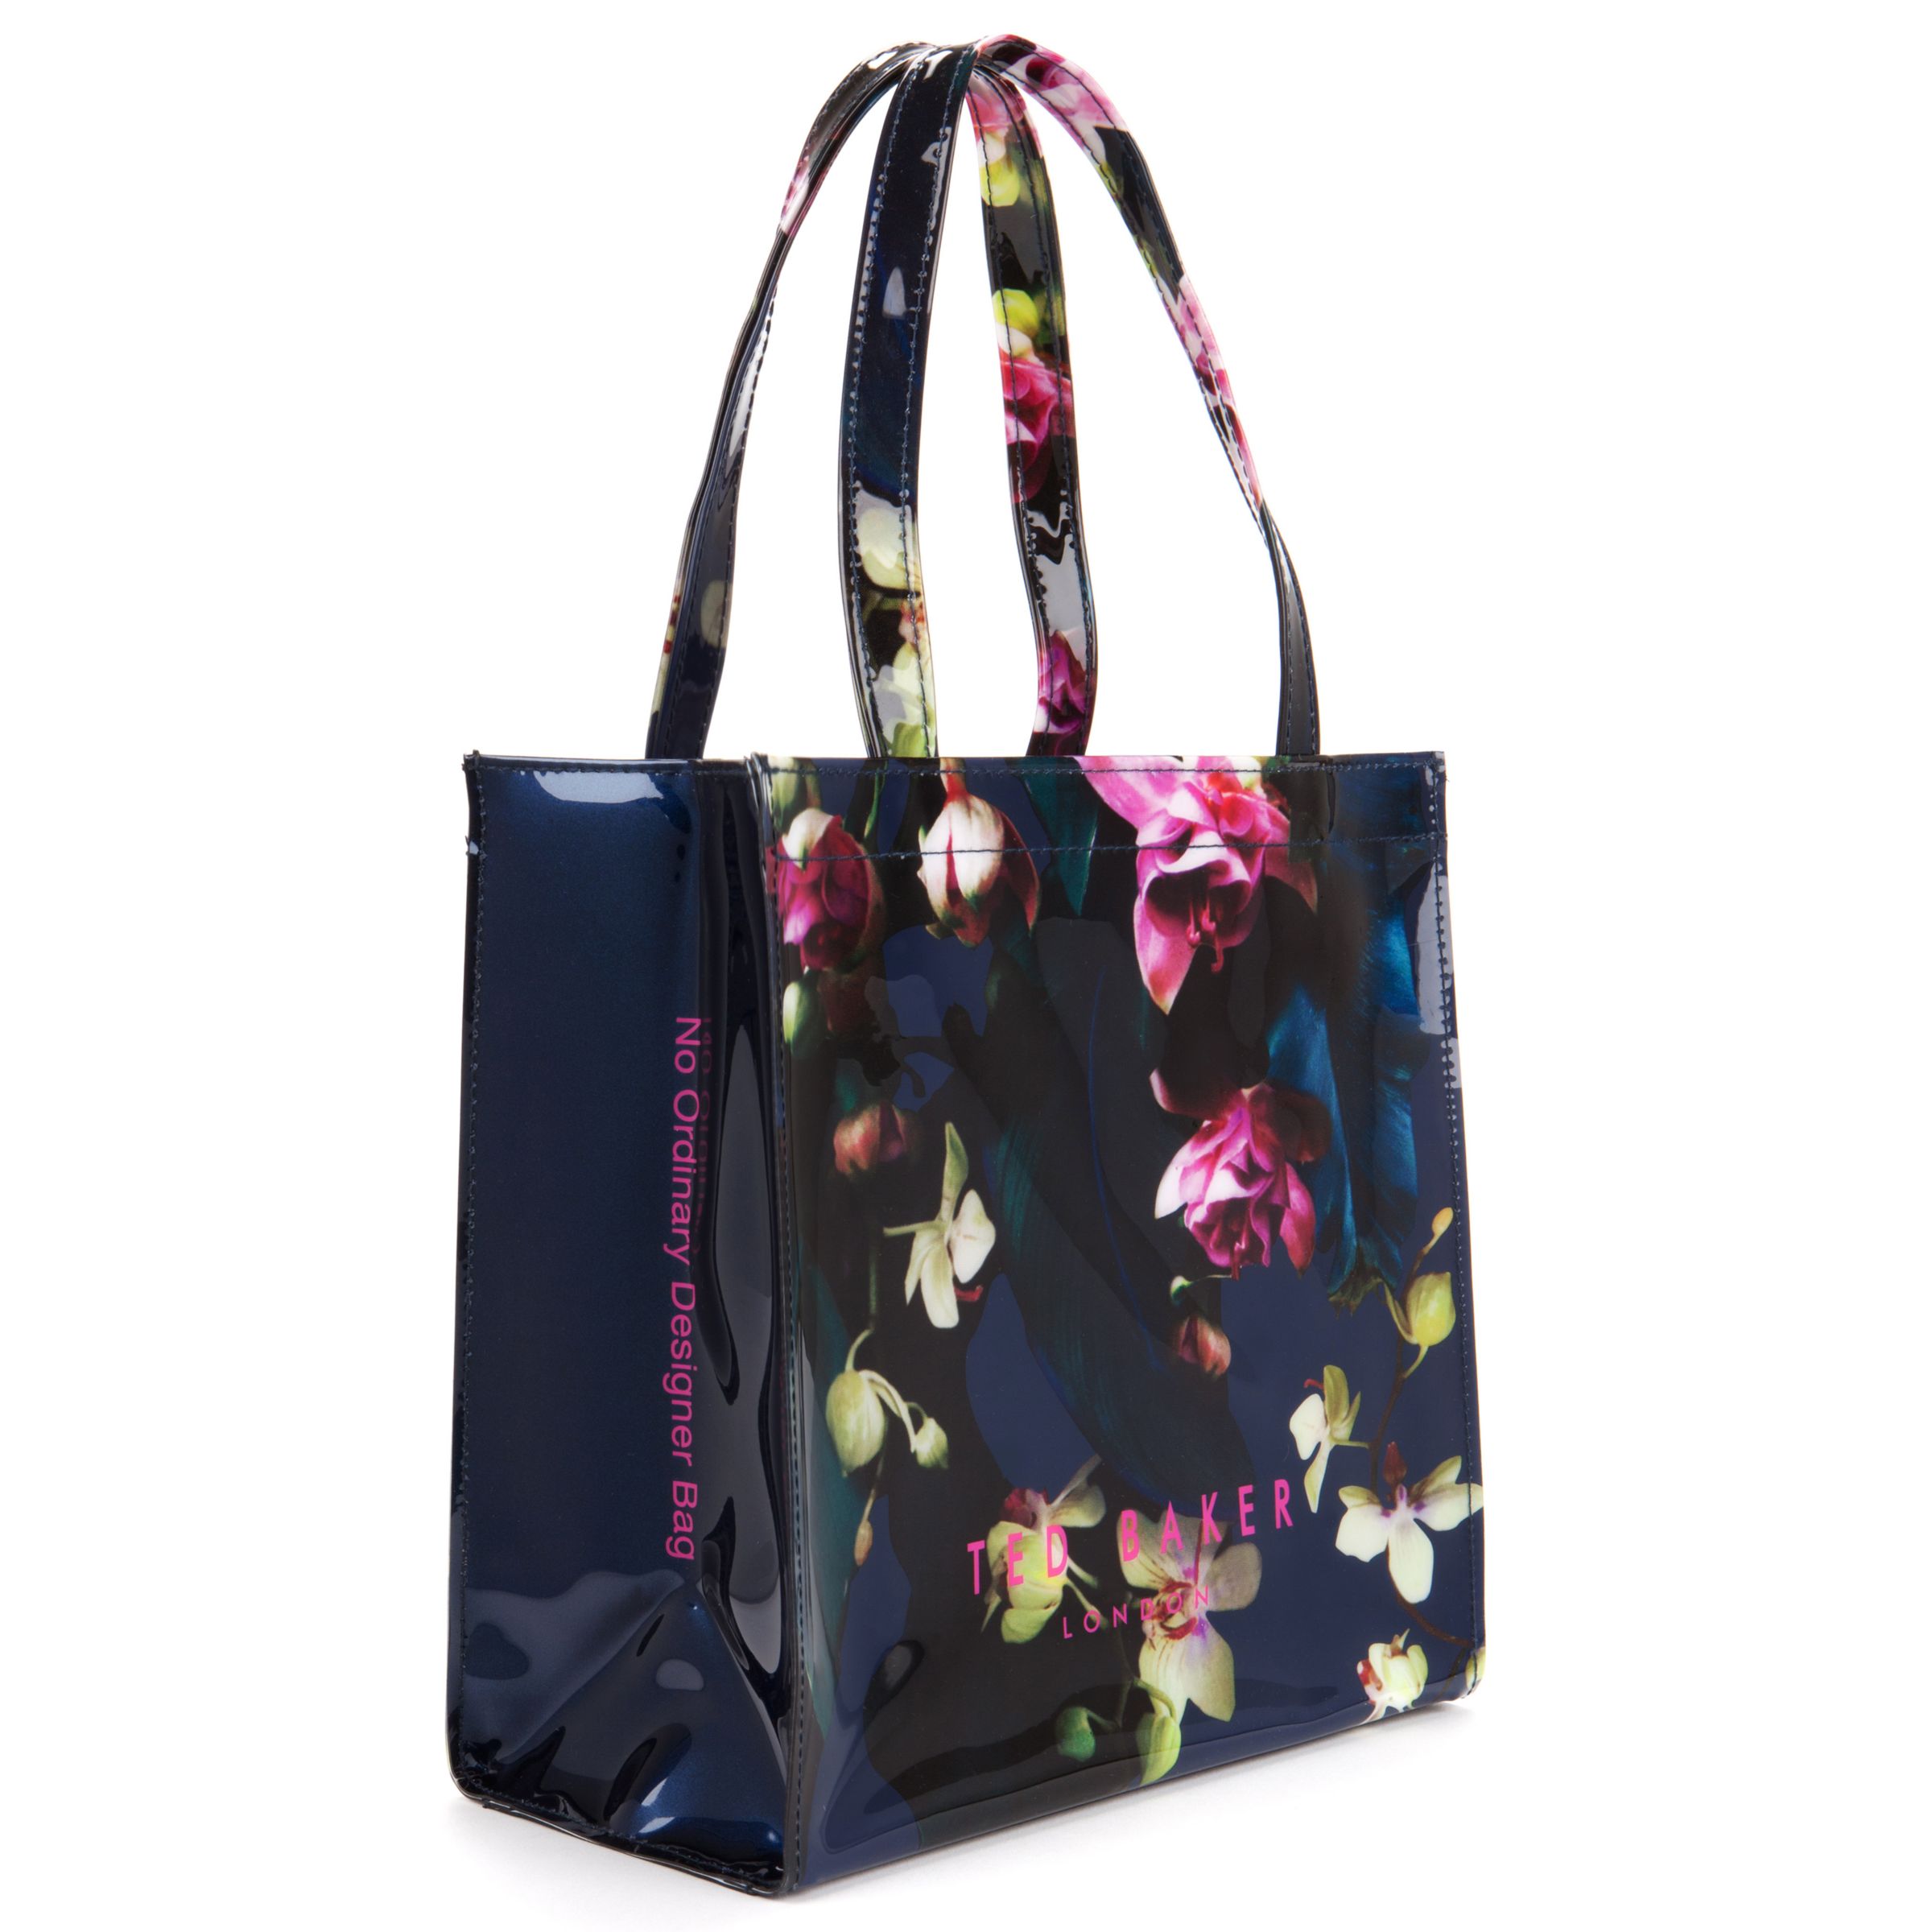 Ted Baker London Coracon Large Shopper Tote Bag Kensington Floral Prices, Shop Deals Online